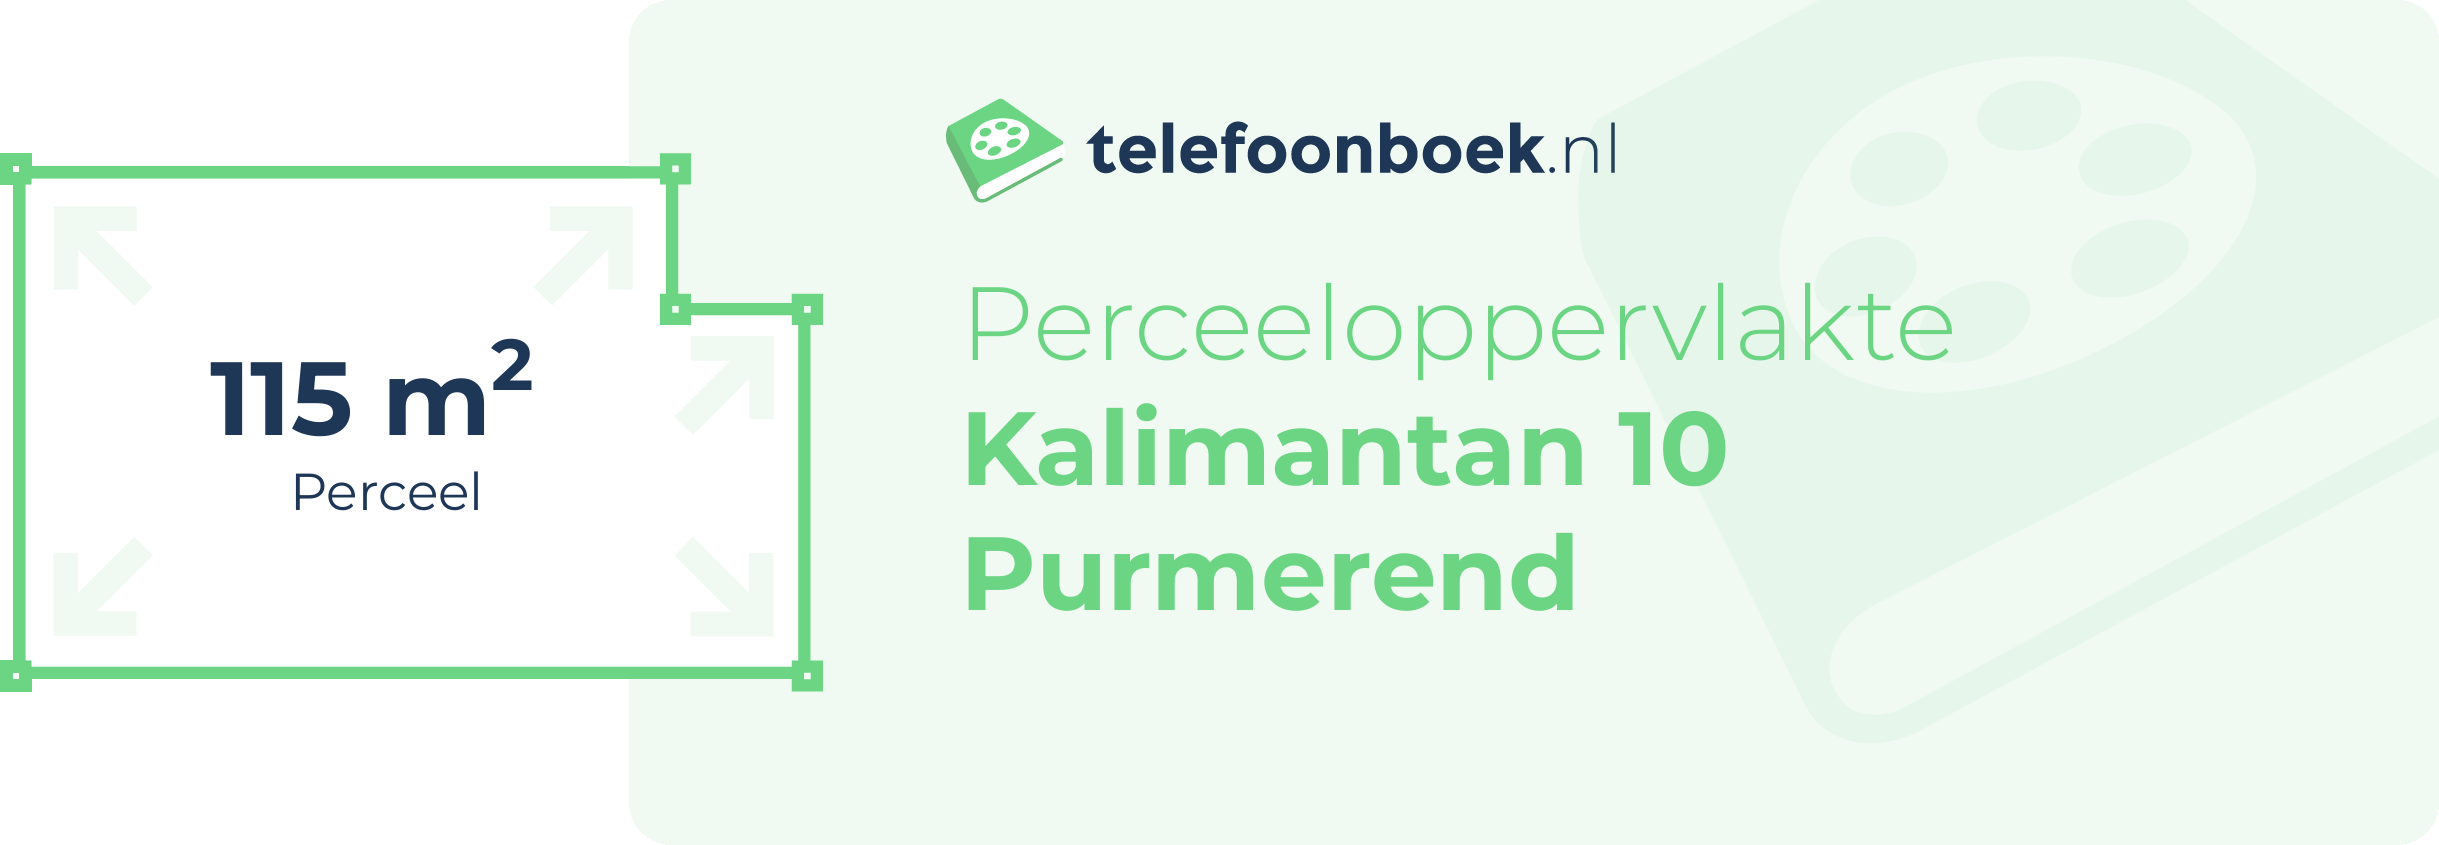 Perceeloppervlakte Kalimantan 10 Purmerend